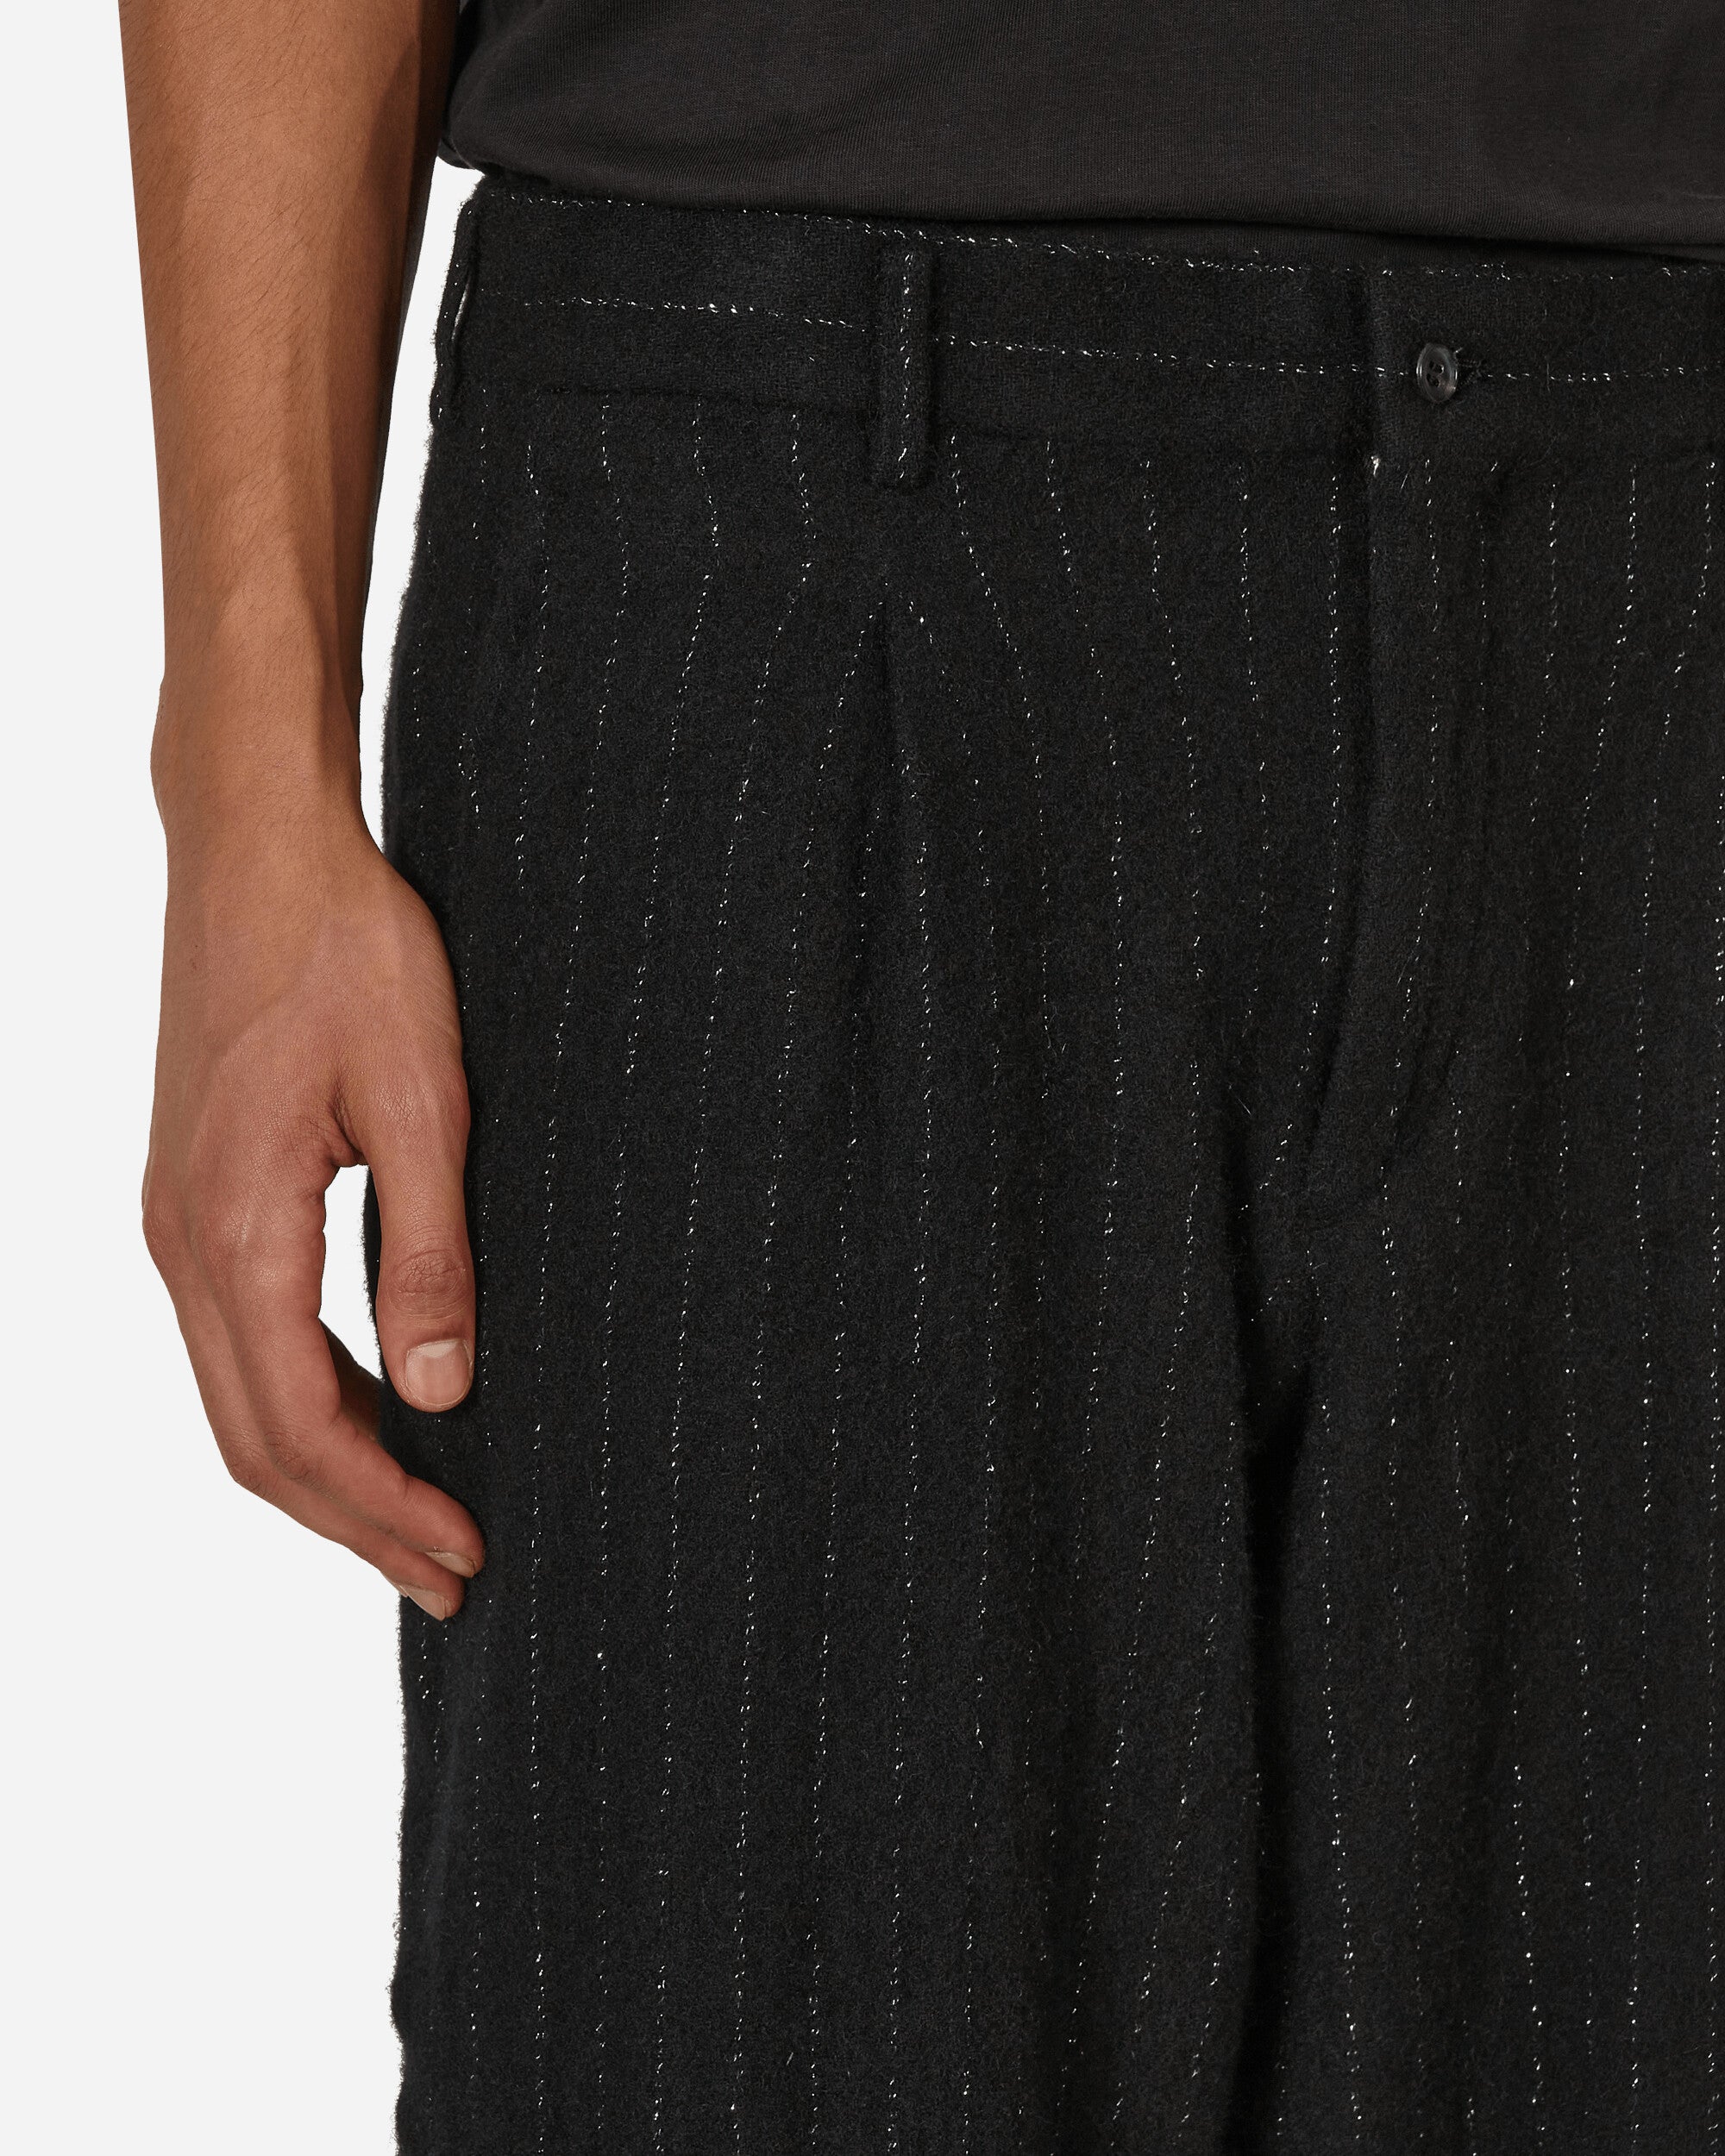 Comme Des Garçons Homme Plus Men'S Pant Black/Silver Pants Trousers PL-P024-W23 1